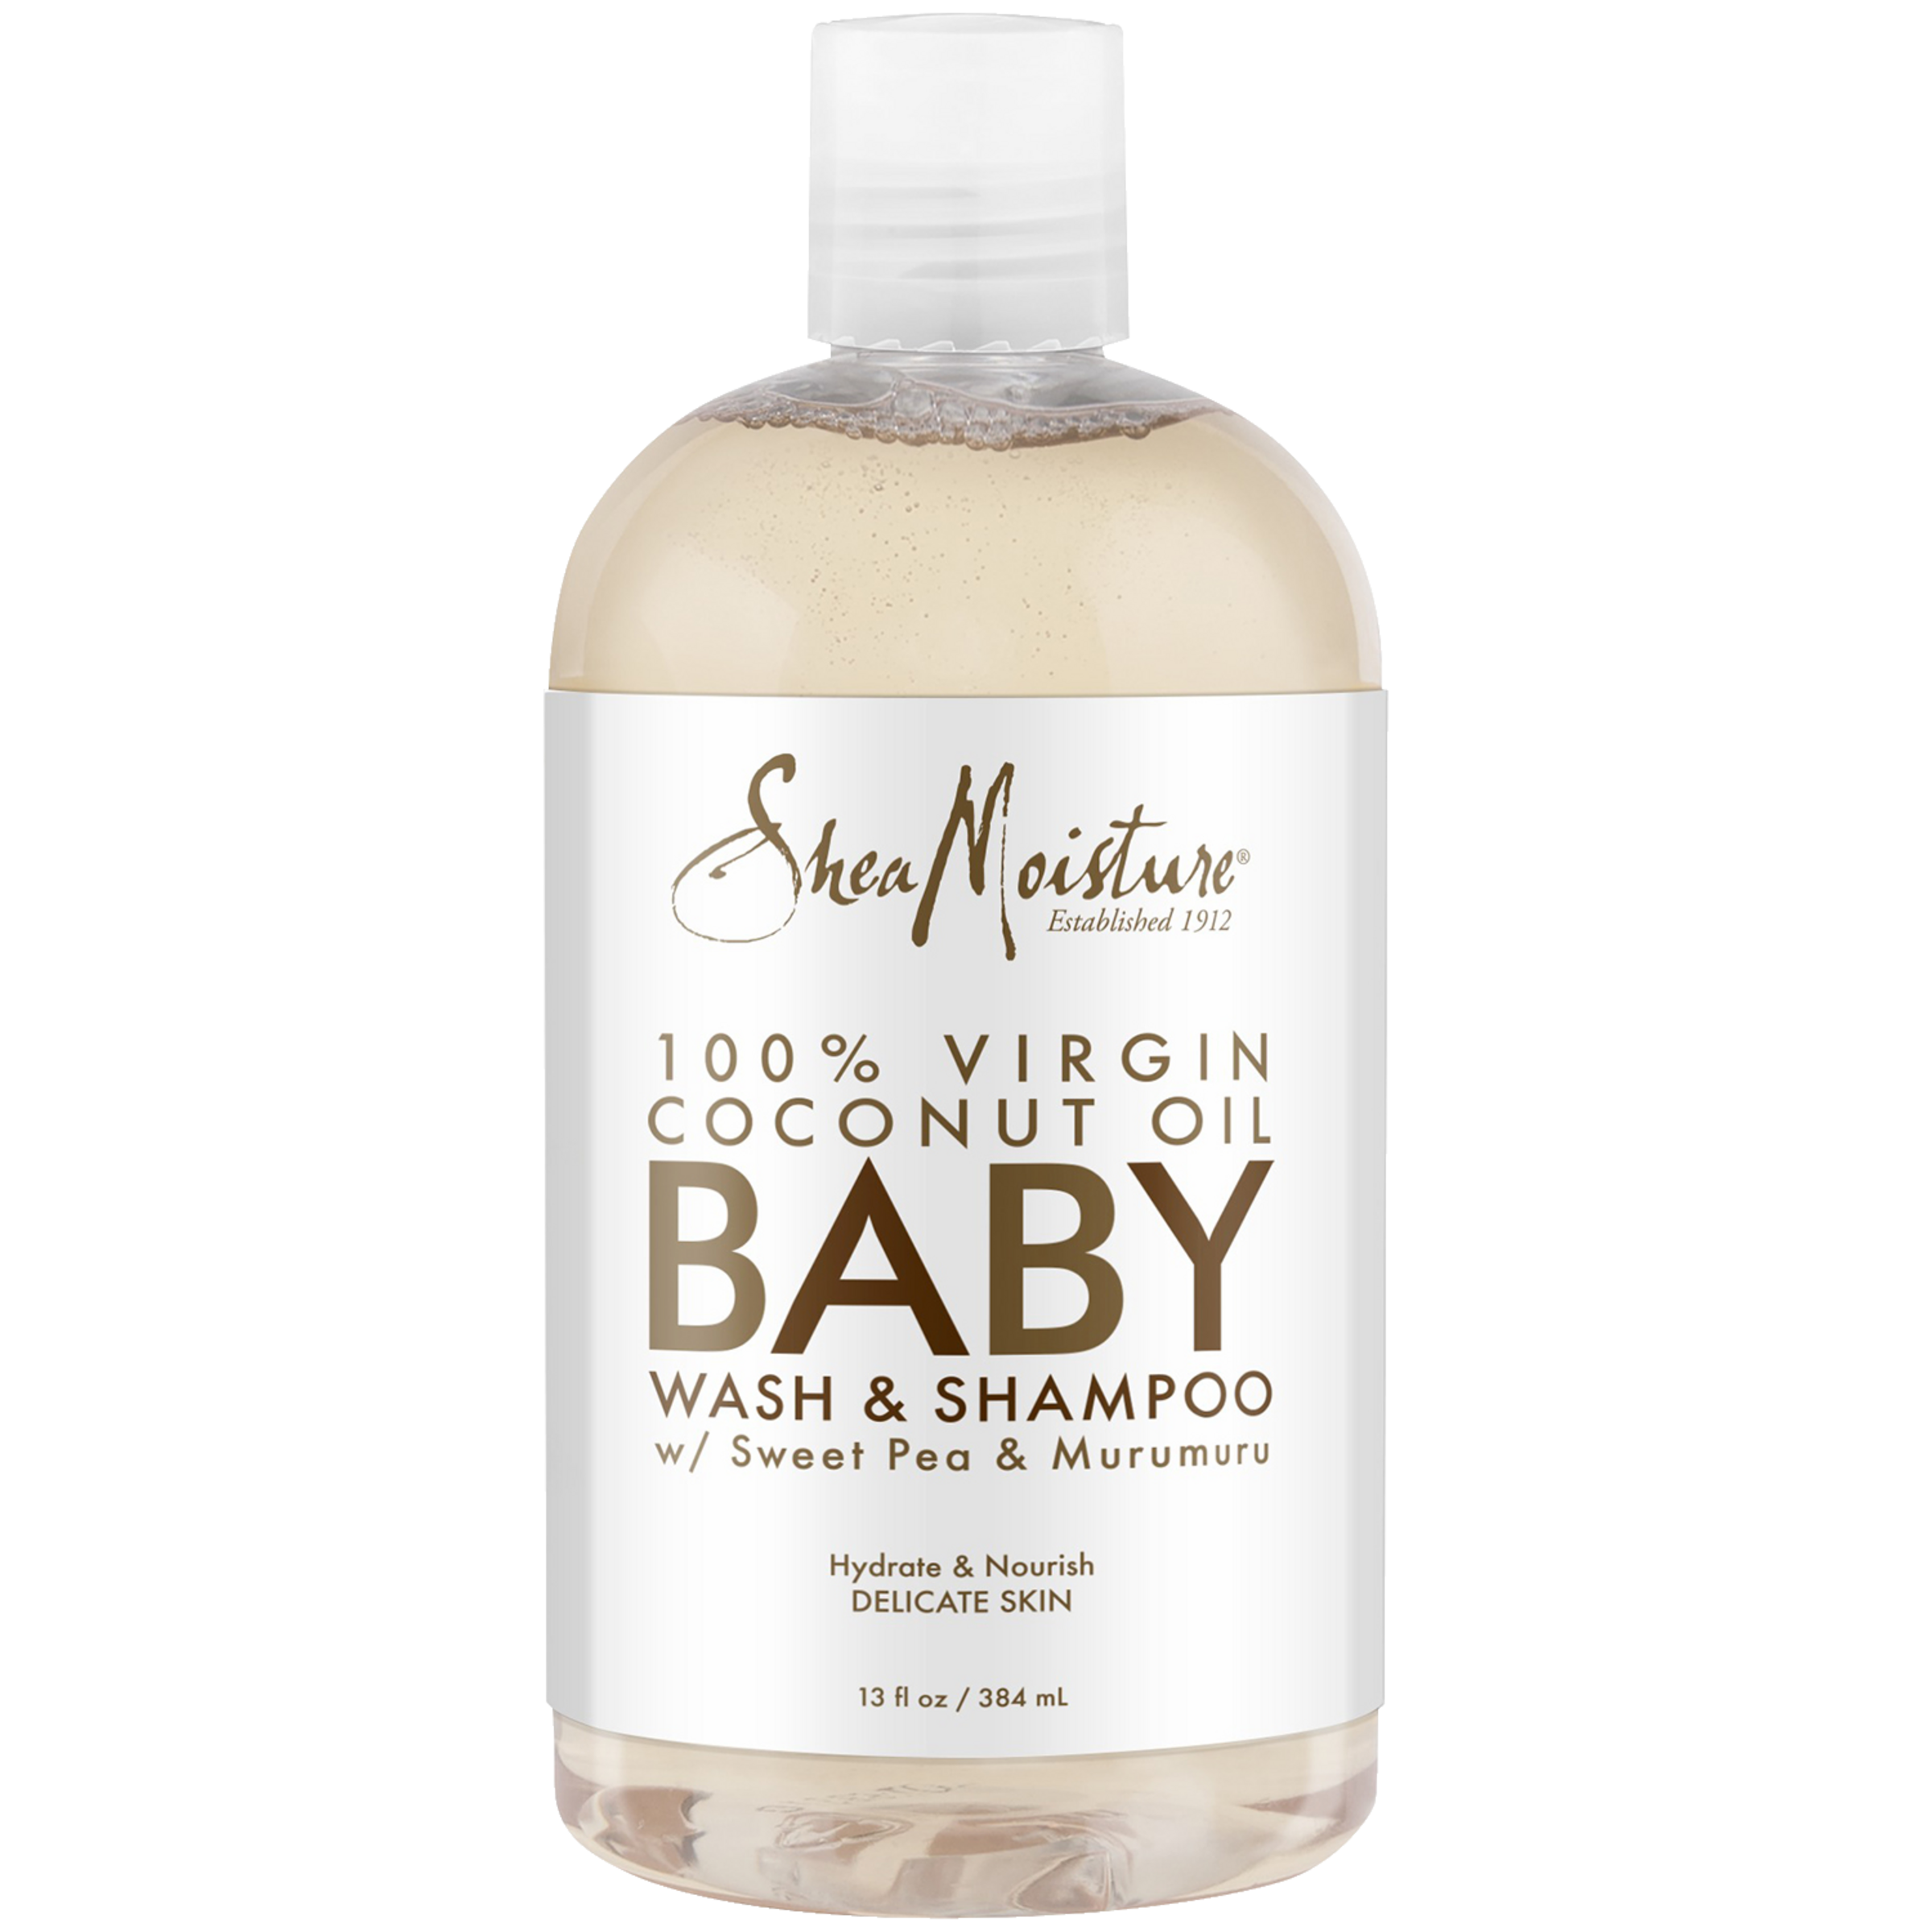 Sheamoisture 100% Virgin Coconut Oil Baby Wash & Shampoo